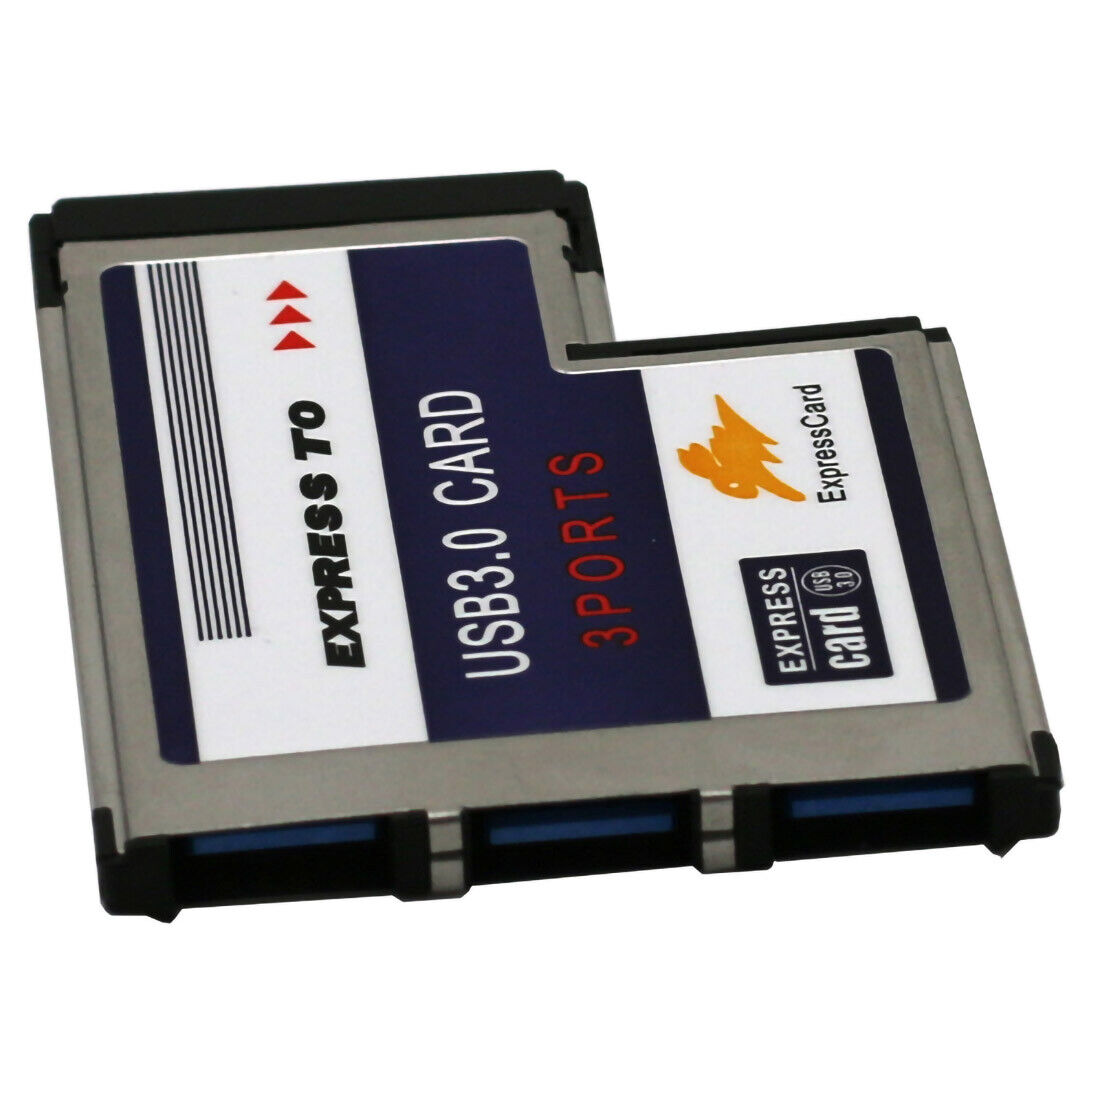 USB 3.0 54mm 3 Port Express Card Adapter Expresscard for Laptop Notebook